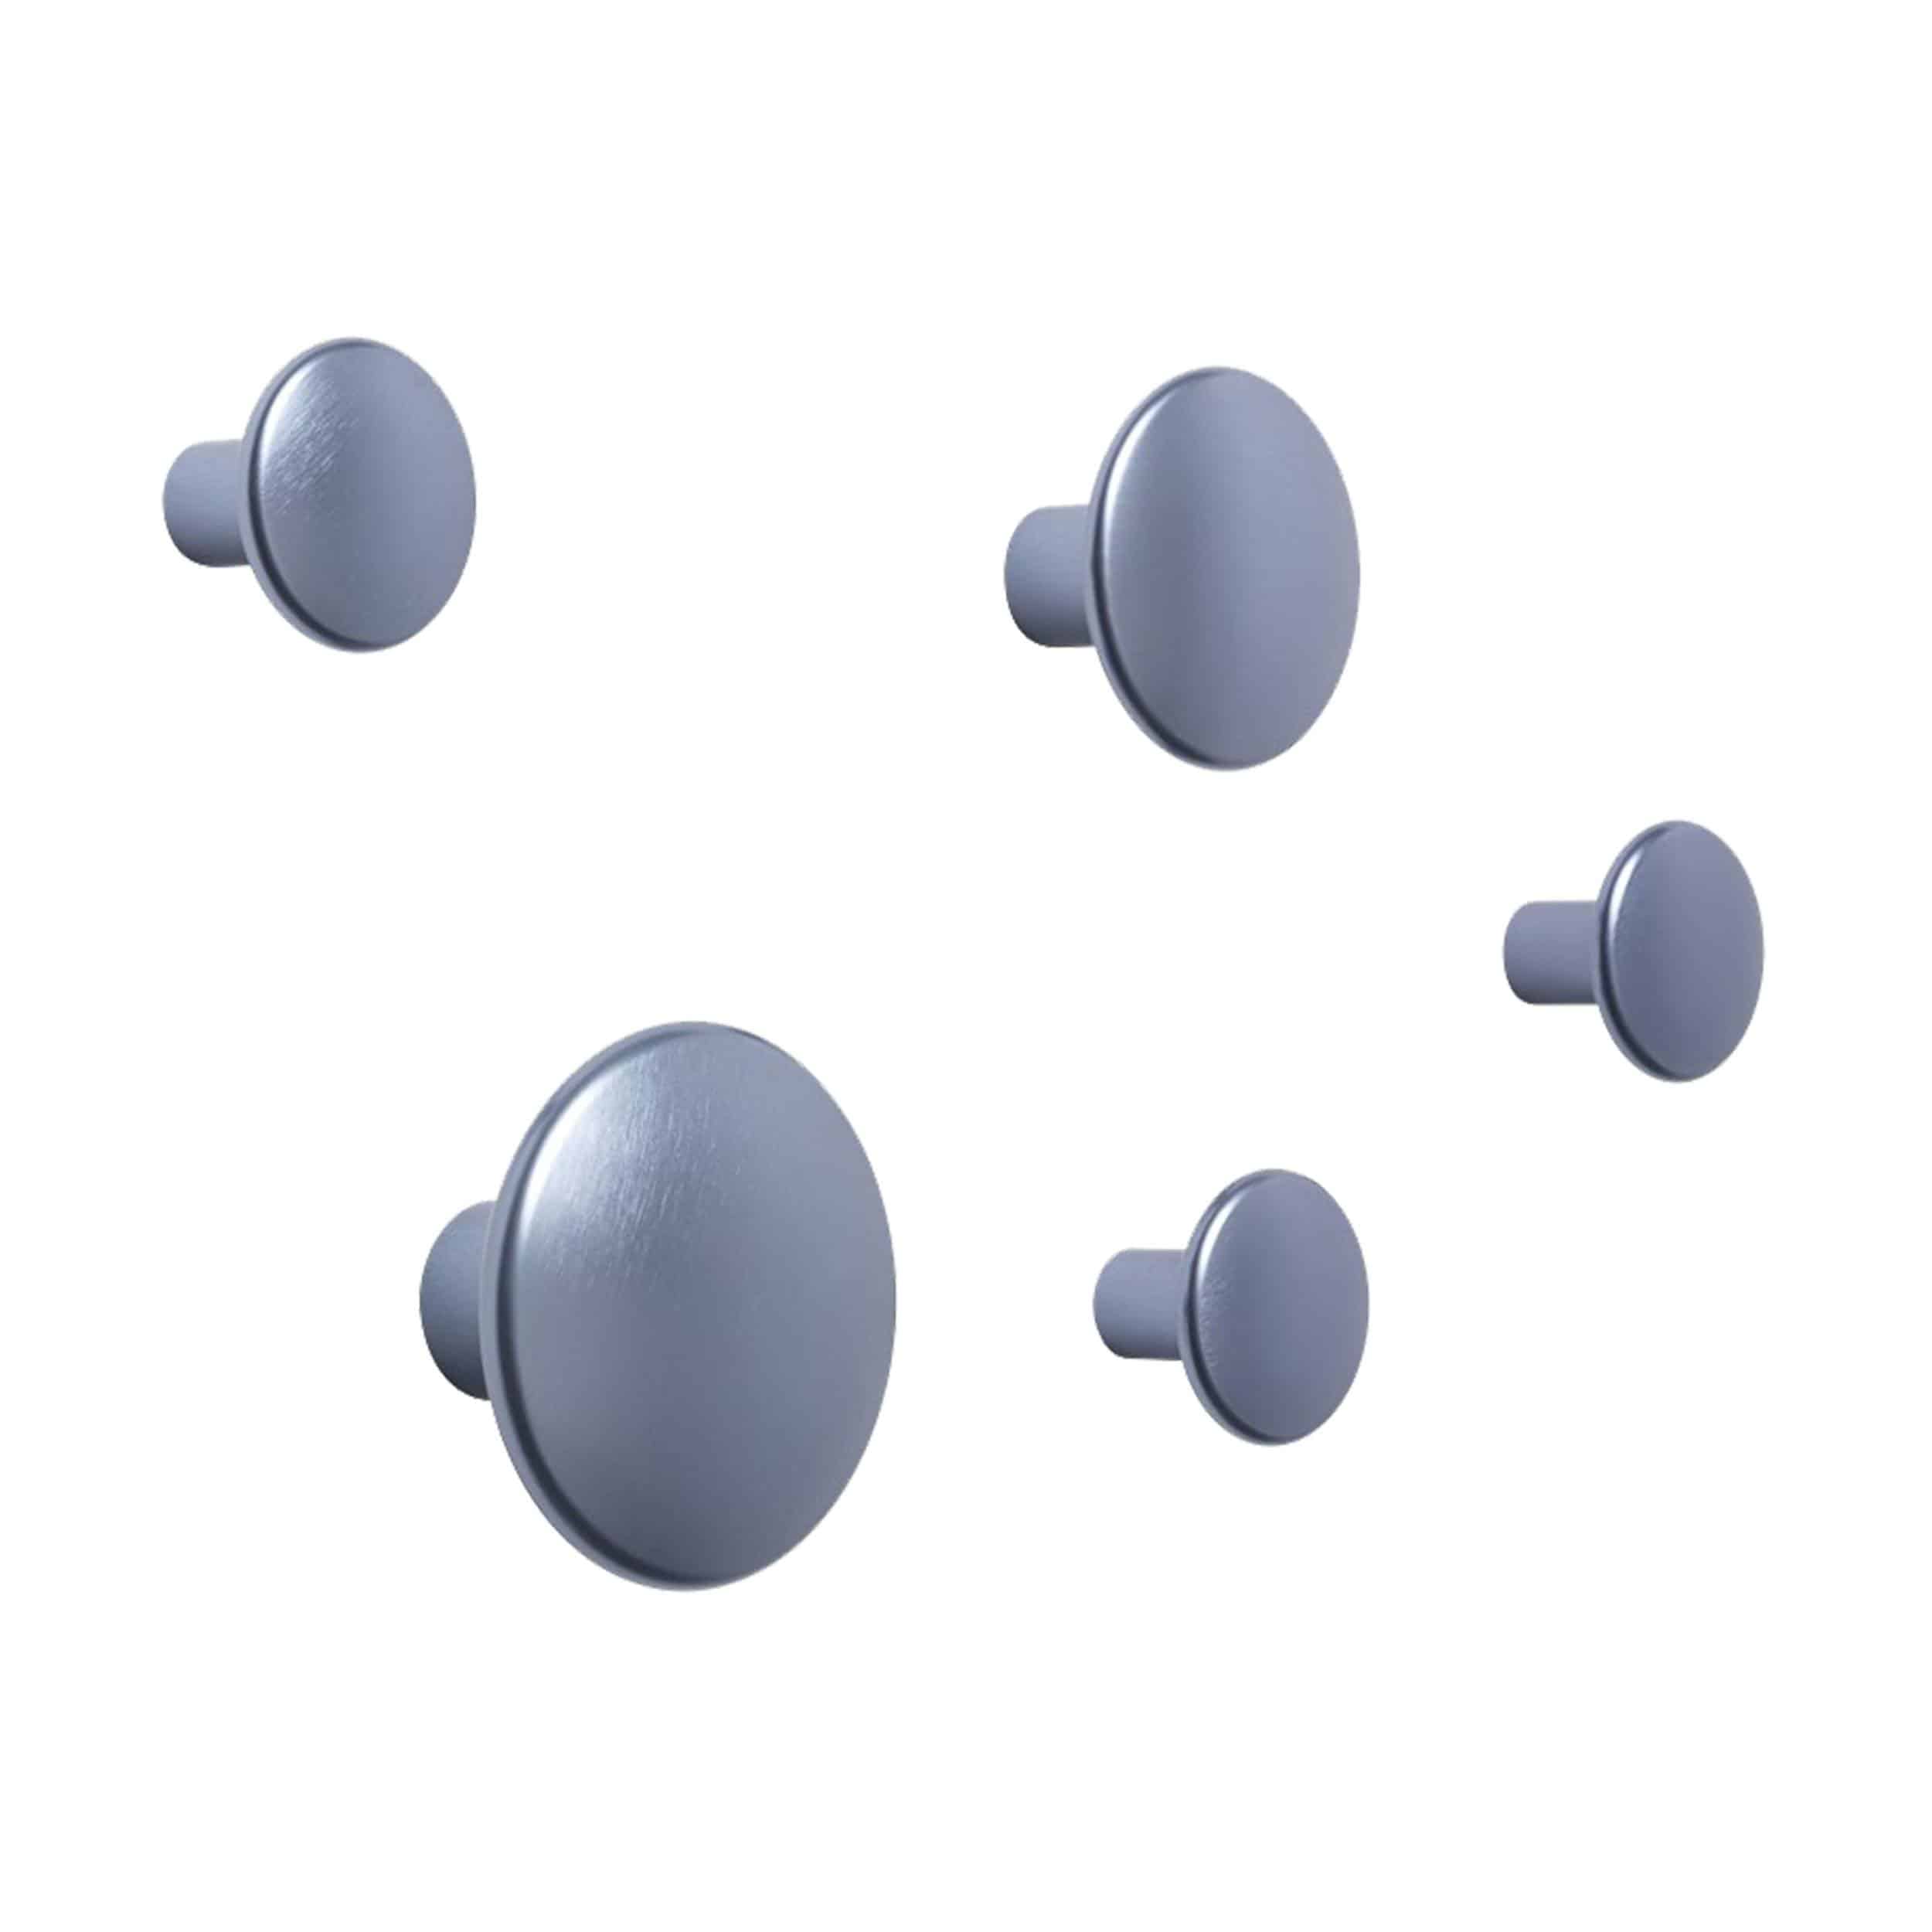 The Dots Metal Garderobenhaken 5er-Set